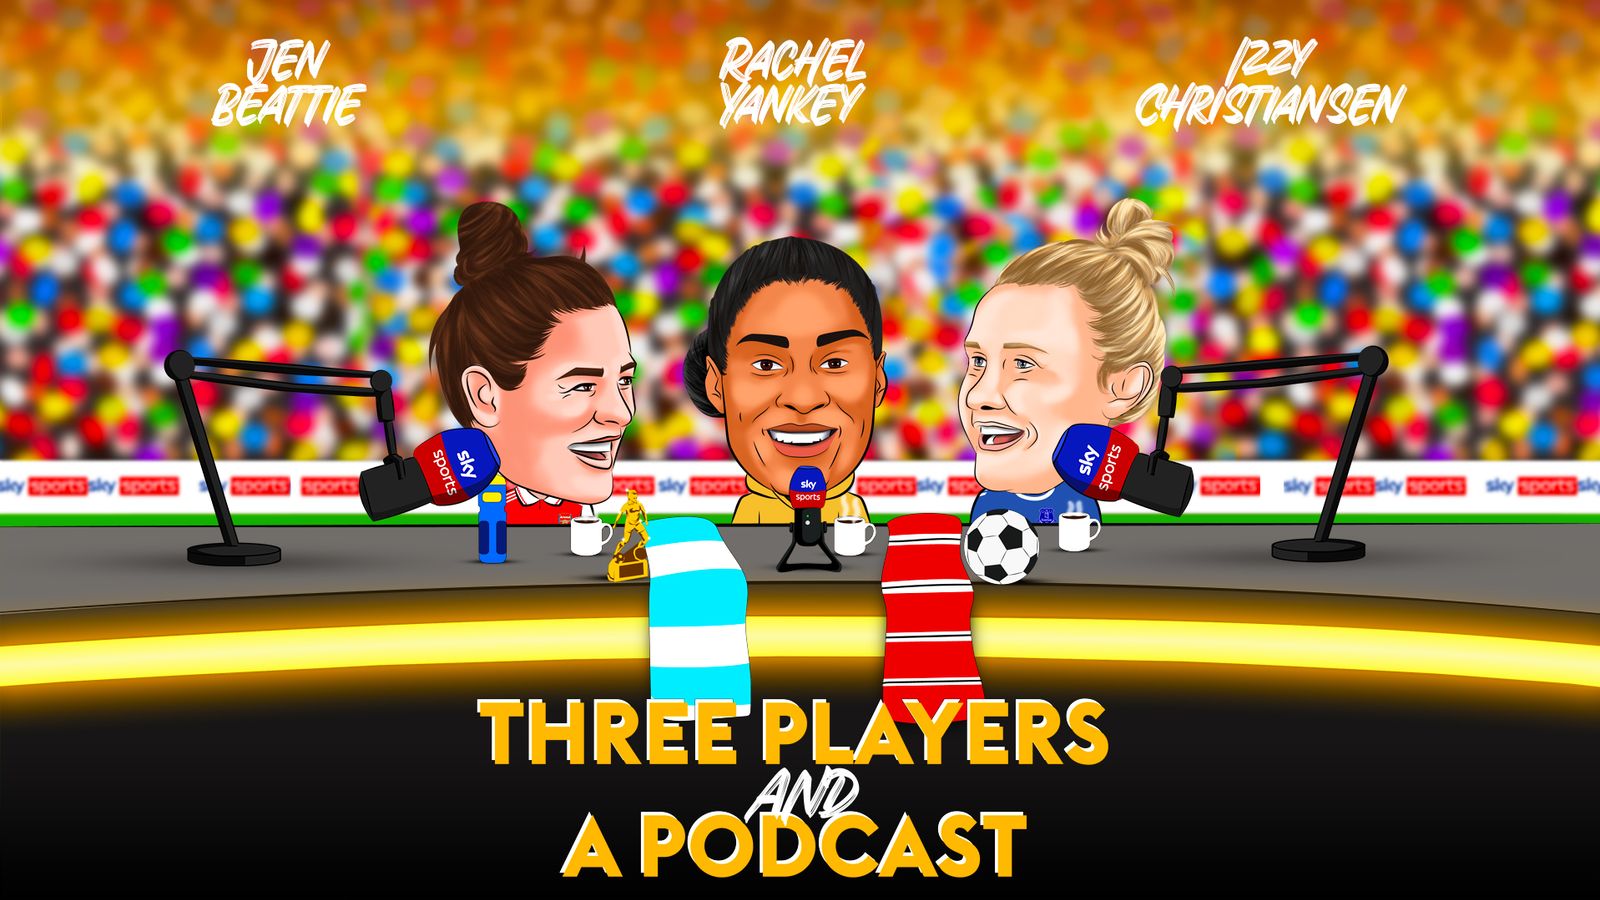 ESCUCHA: Three Players and a Podcast: Jen Beattie, Izzy Christensen y Rachel Yankey dan su opinión sobre el último episodio |  Noticias de futbol